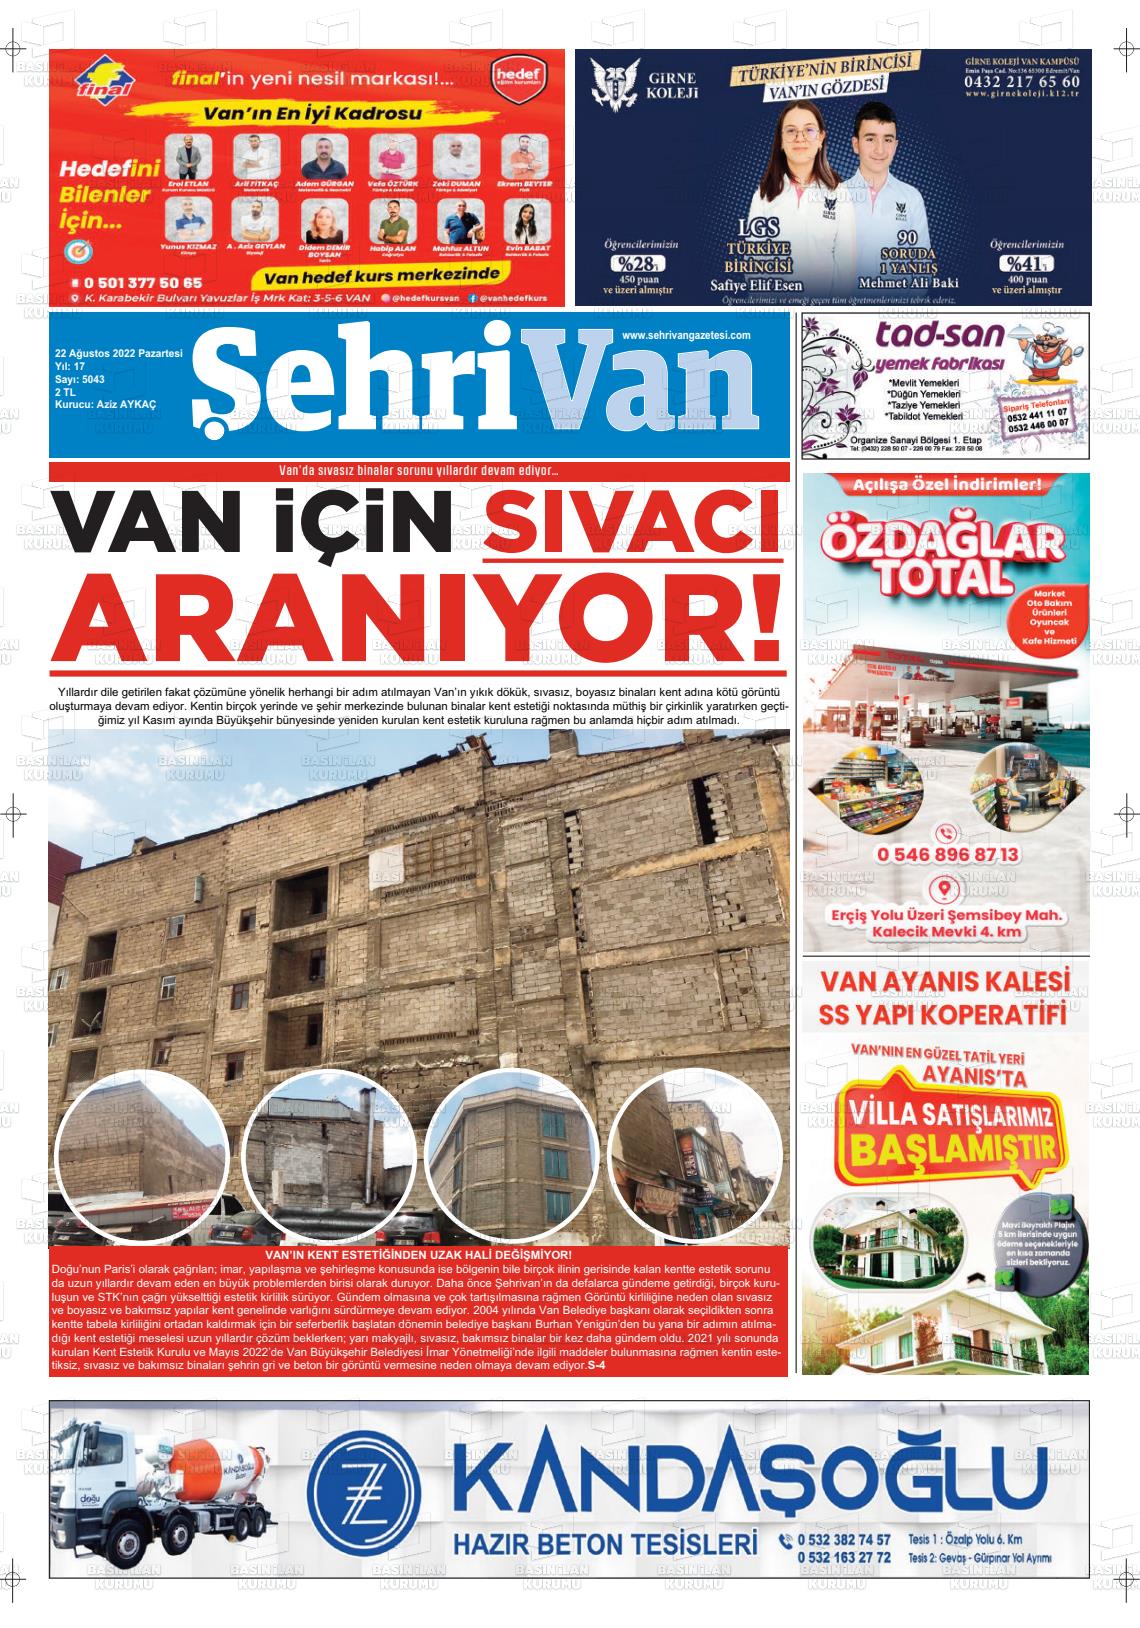 22 Ağustos 2022 Şehrivan Gazete Manşeti